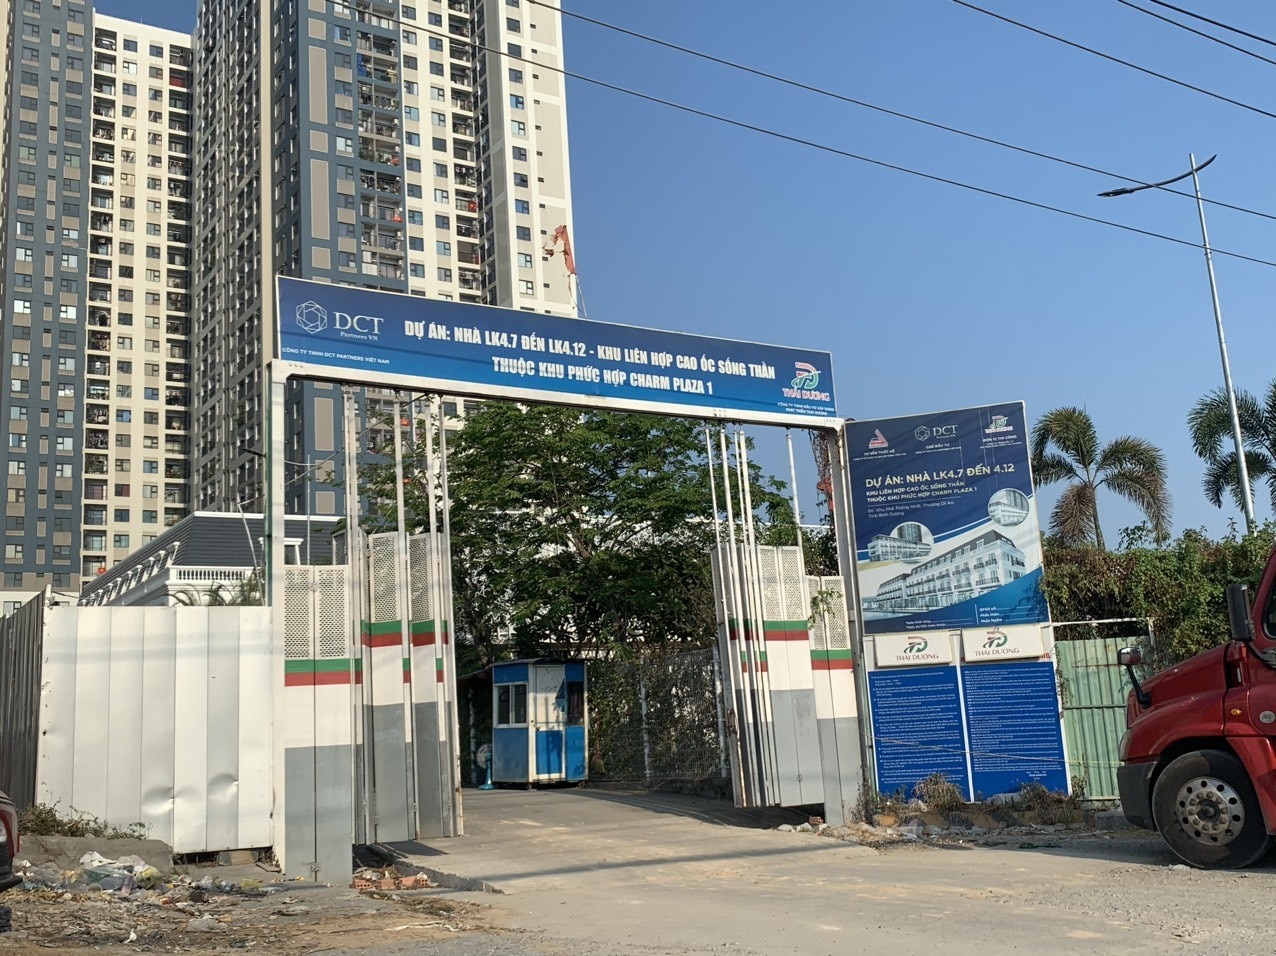 Immobilier - Le Département de la construction de Binh Duong fournit des informations sur de nombreux projets immobiliers (Figure 2).